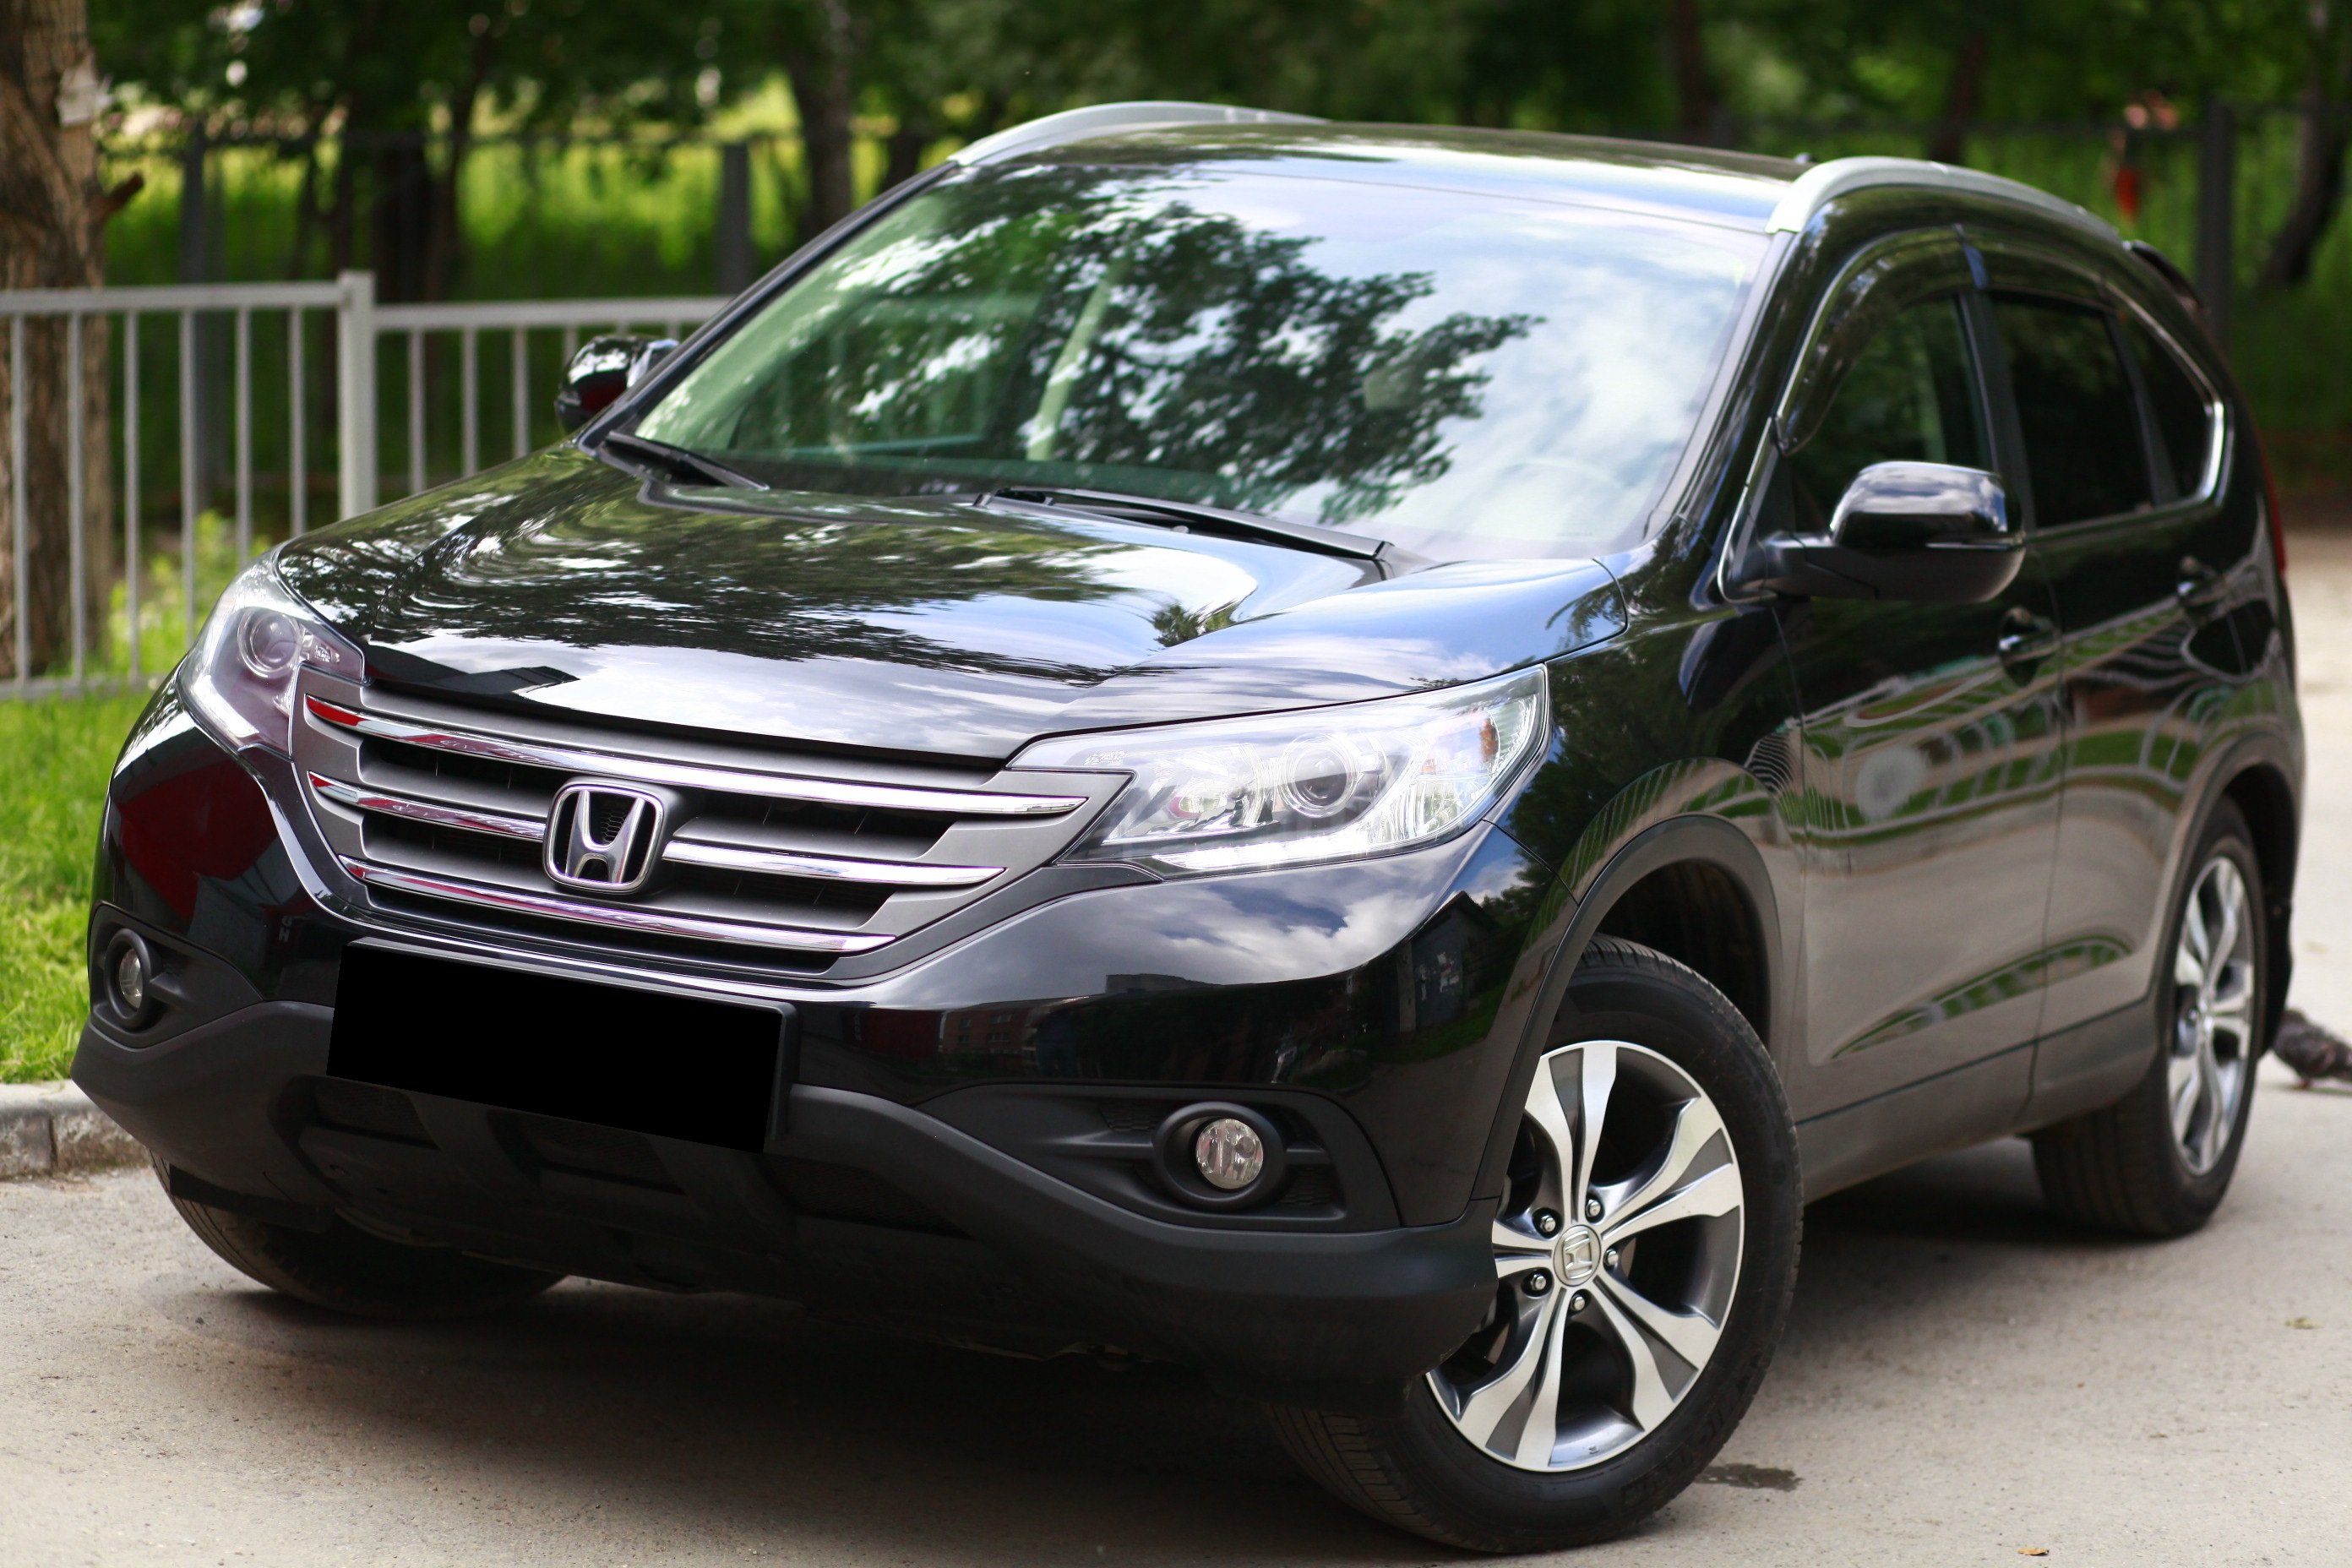 Купить хонда 2013г. Honda CR-V 2013. Honda CRV 2013 черная. Honda CRV 2013 2.4. Honda CRV 4 2013.